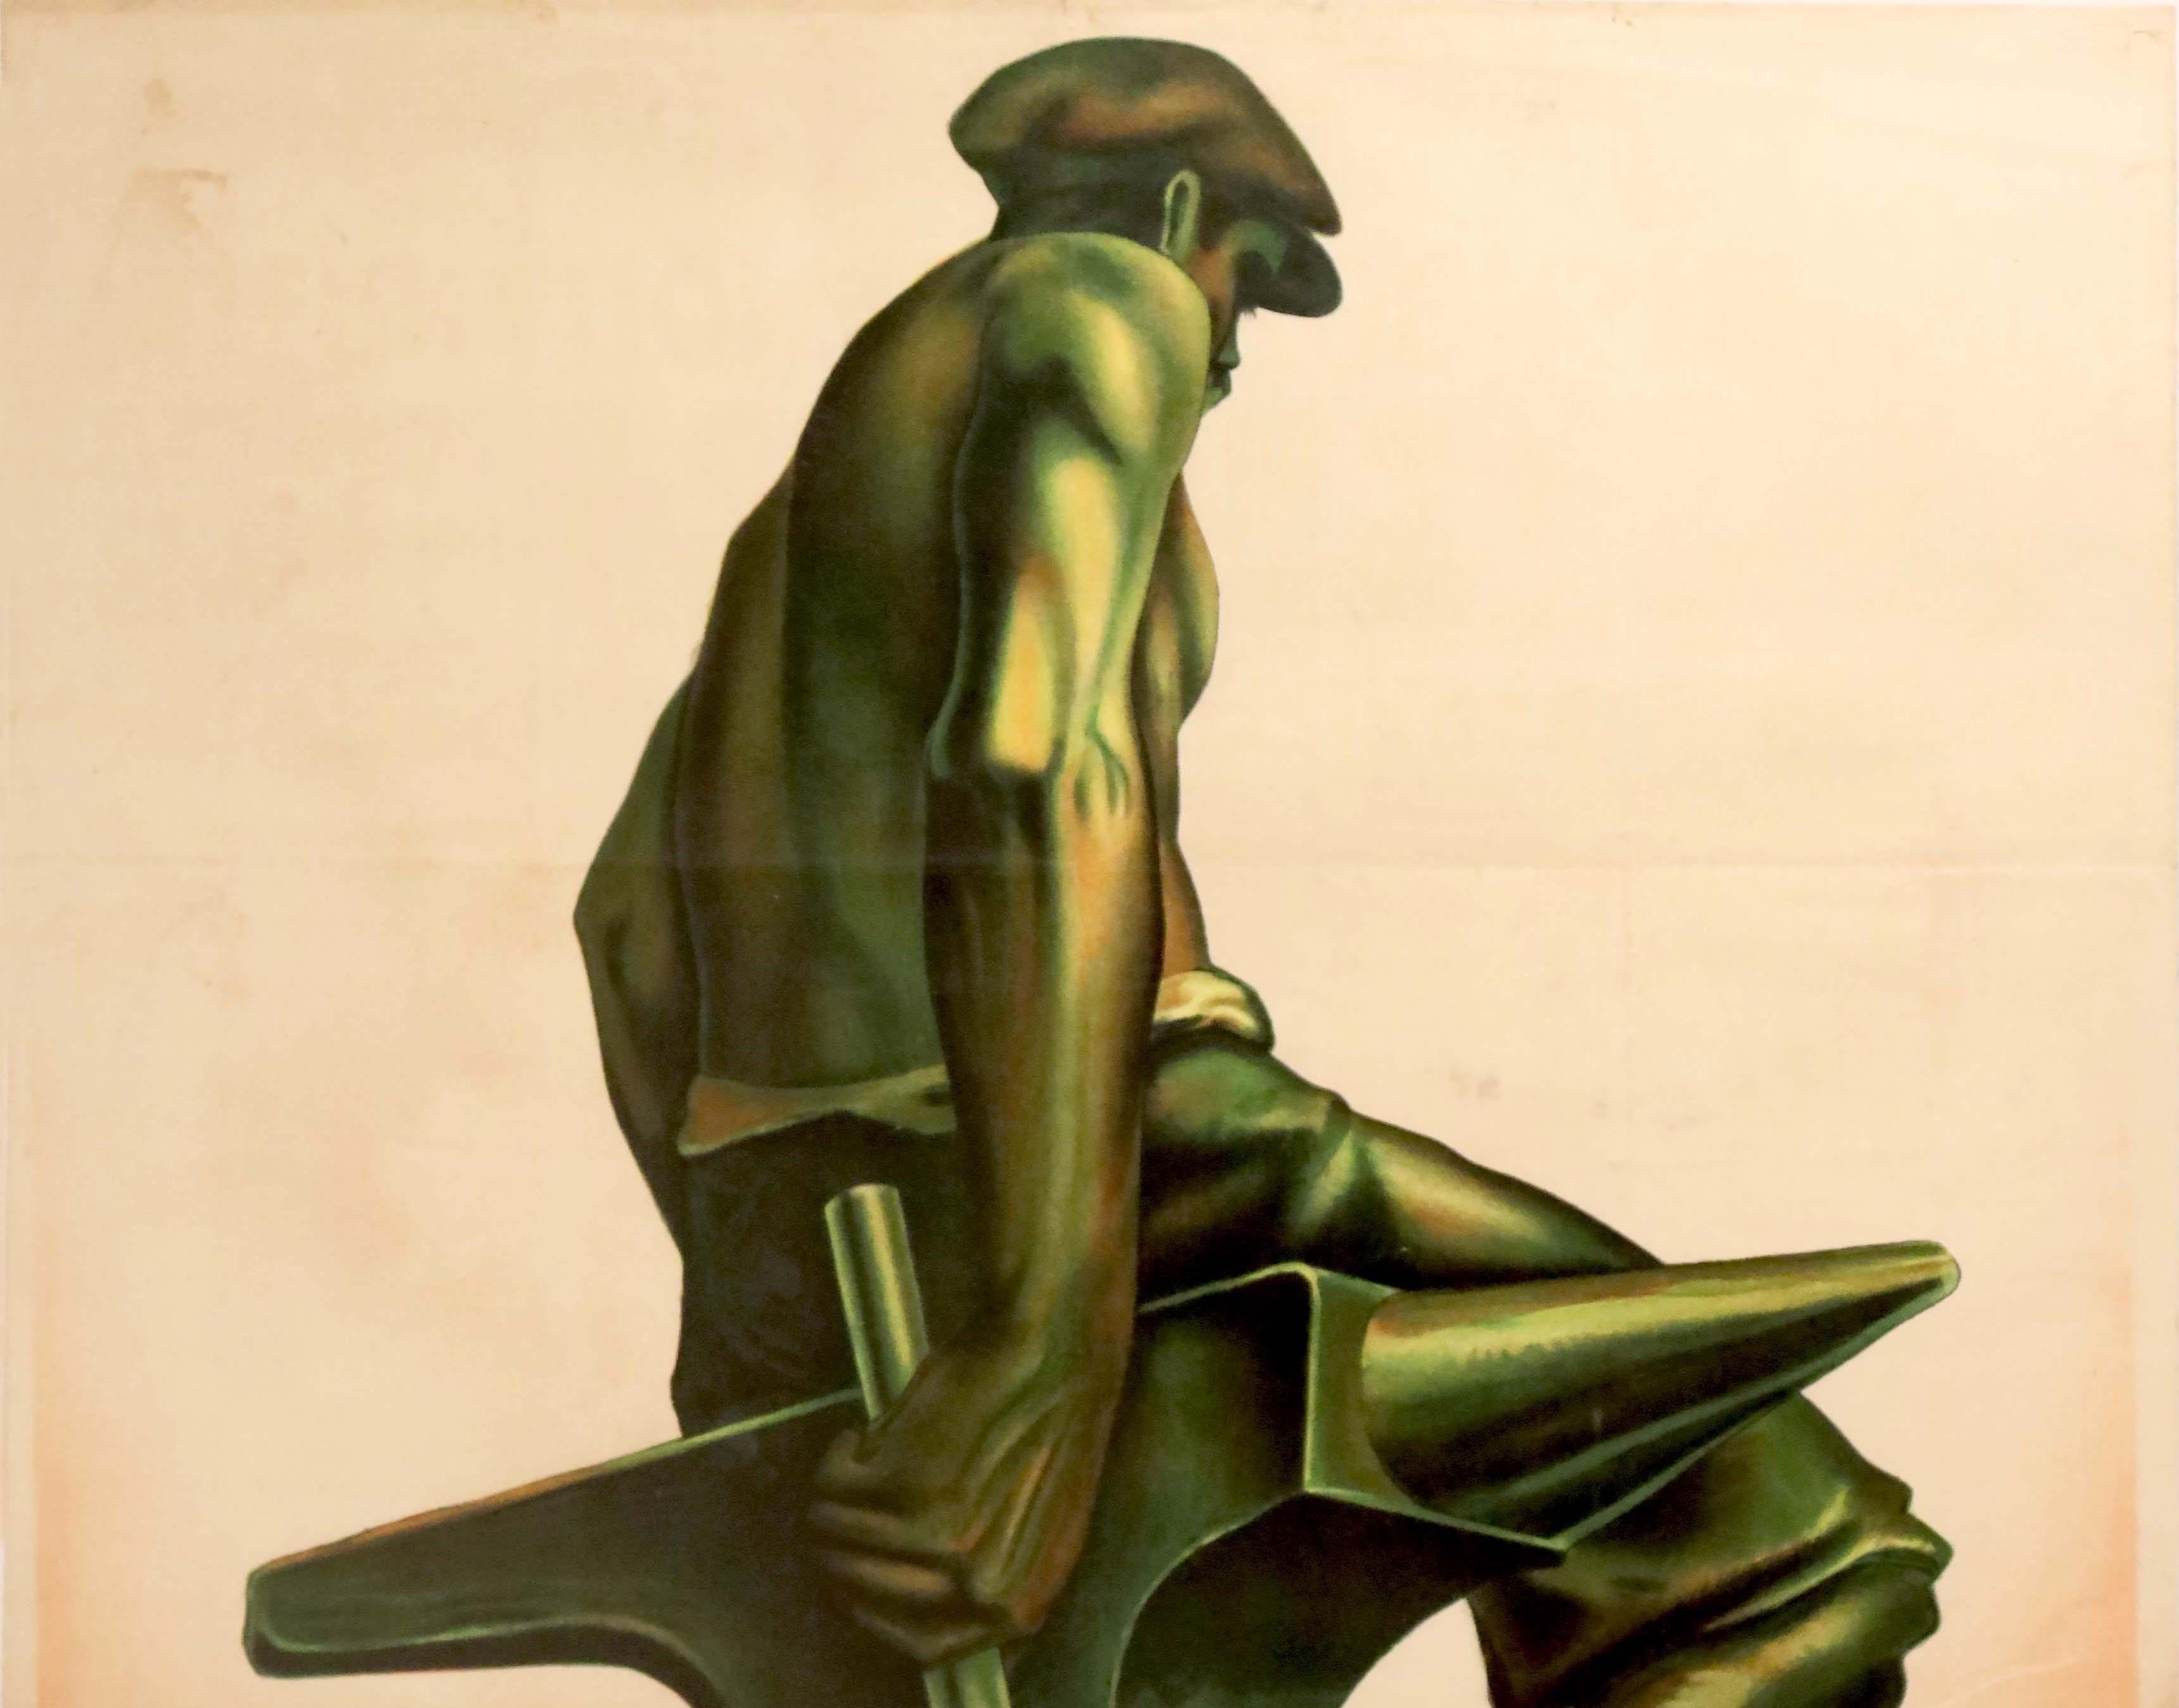 Affiche publicitaire originale d'époque pour l'exposition internationale Liège 1930 célébrant le centenaire de l'indépendance de la Belgique - Luik 1930 - présentant une superbe illustration d'une statue d'un ouvrier sur une enclume tenant un